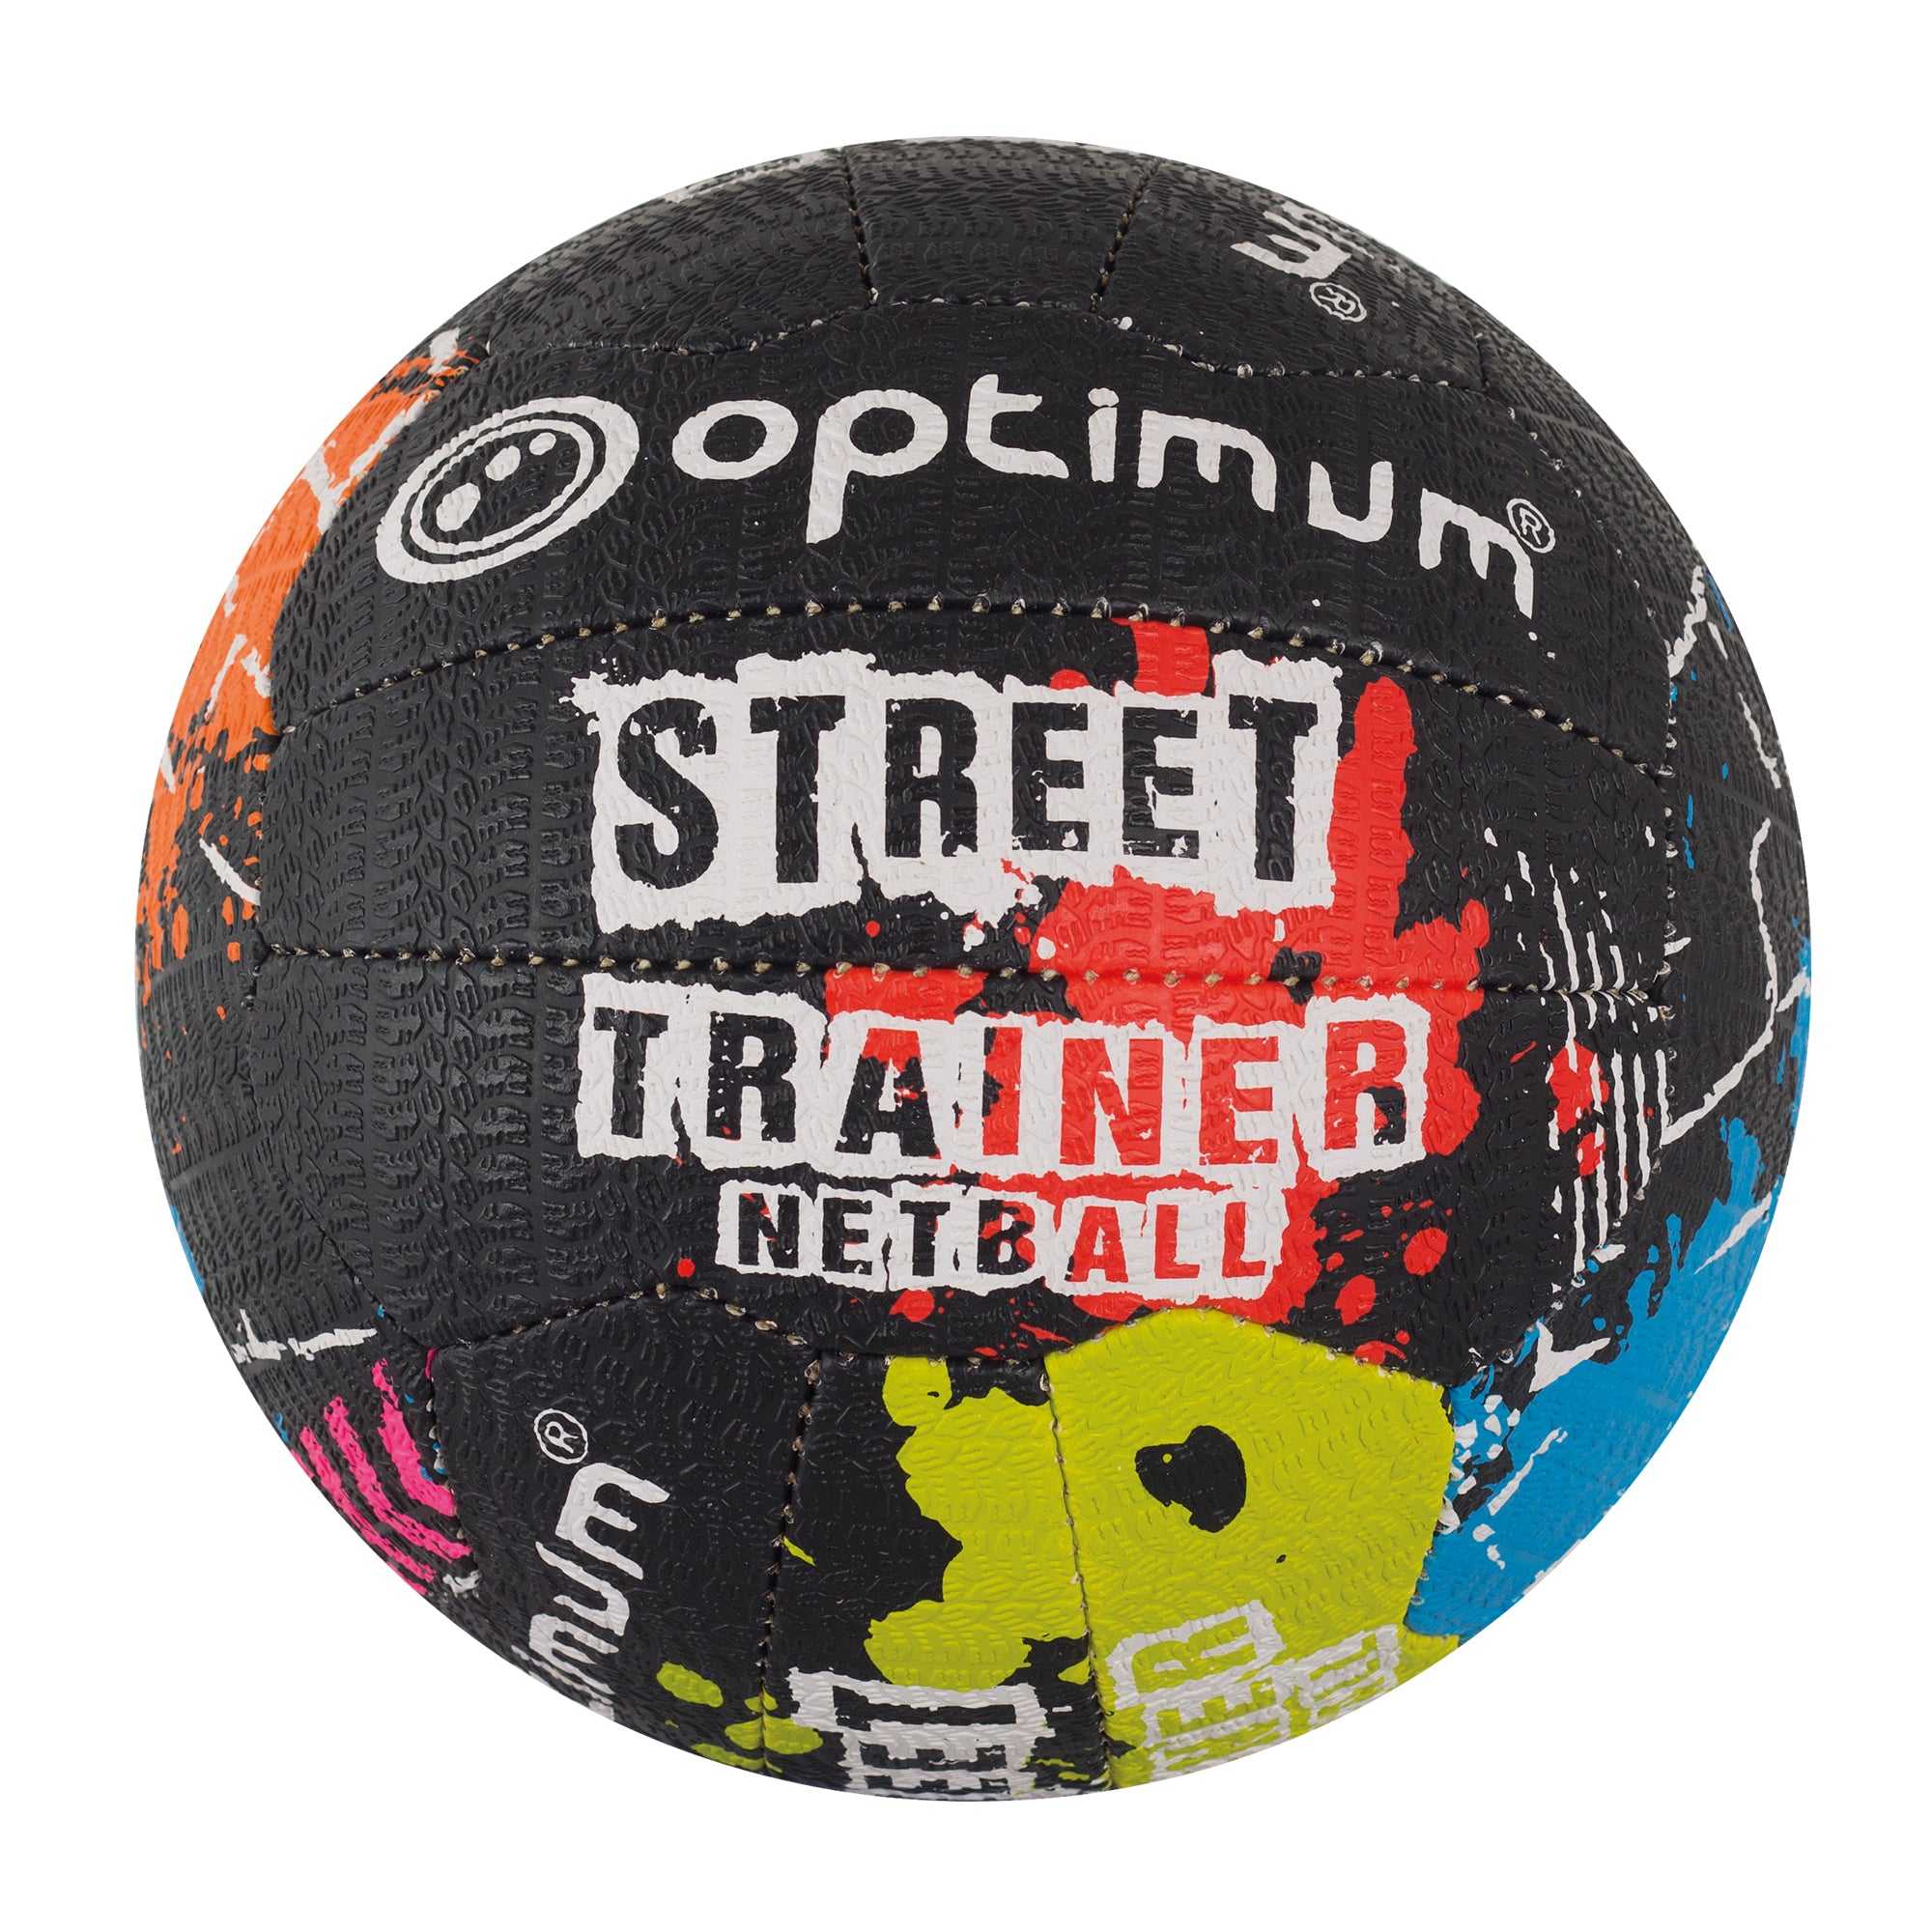 Street Netball - Optimum